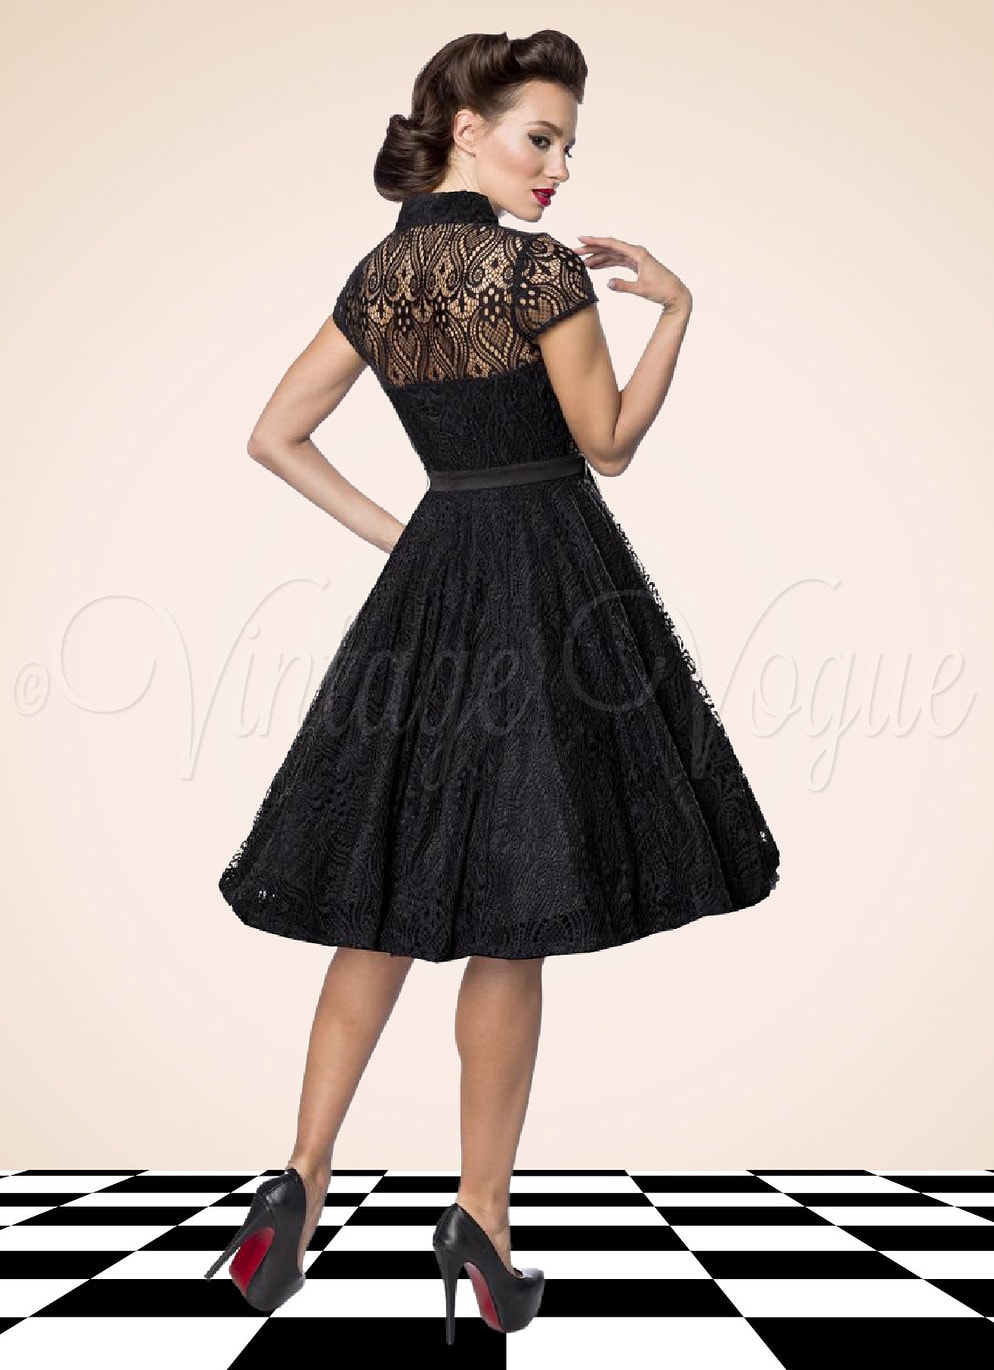 Belsira 50er Jahre Vintage Retro Swing Spitzen Kleid in Schwarz Petticoat Damen Damenkleid Spitzenkleid Winterkleid elegant Abendkleid festlich